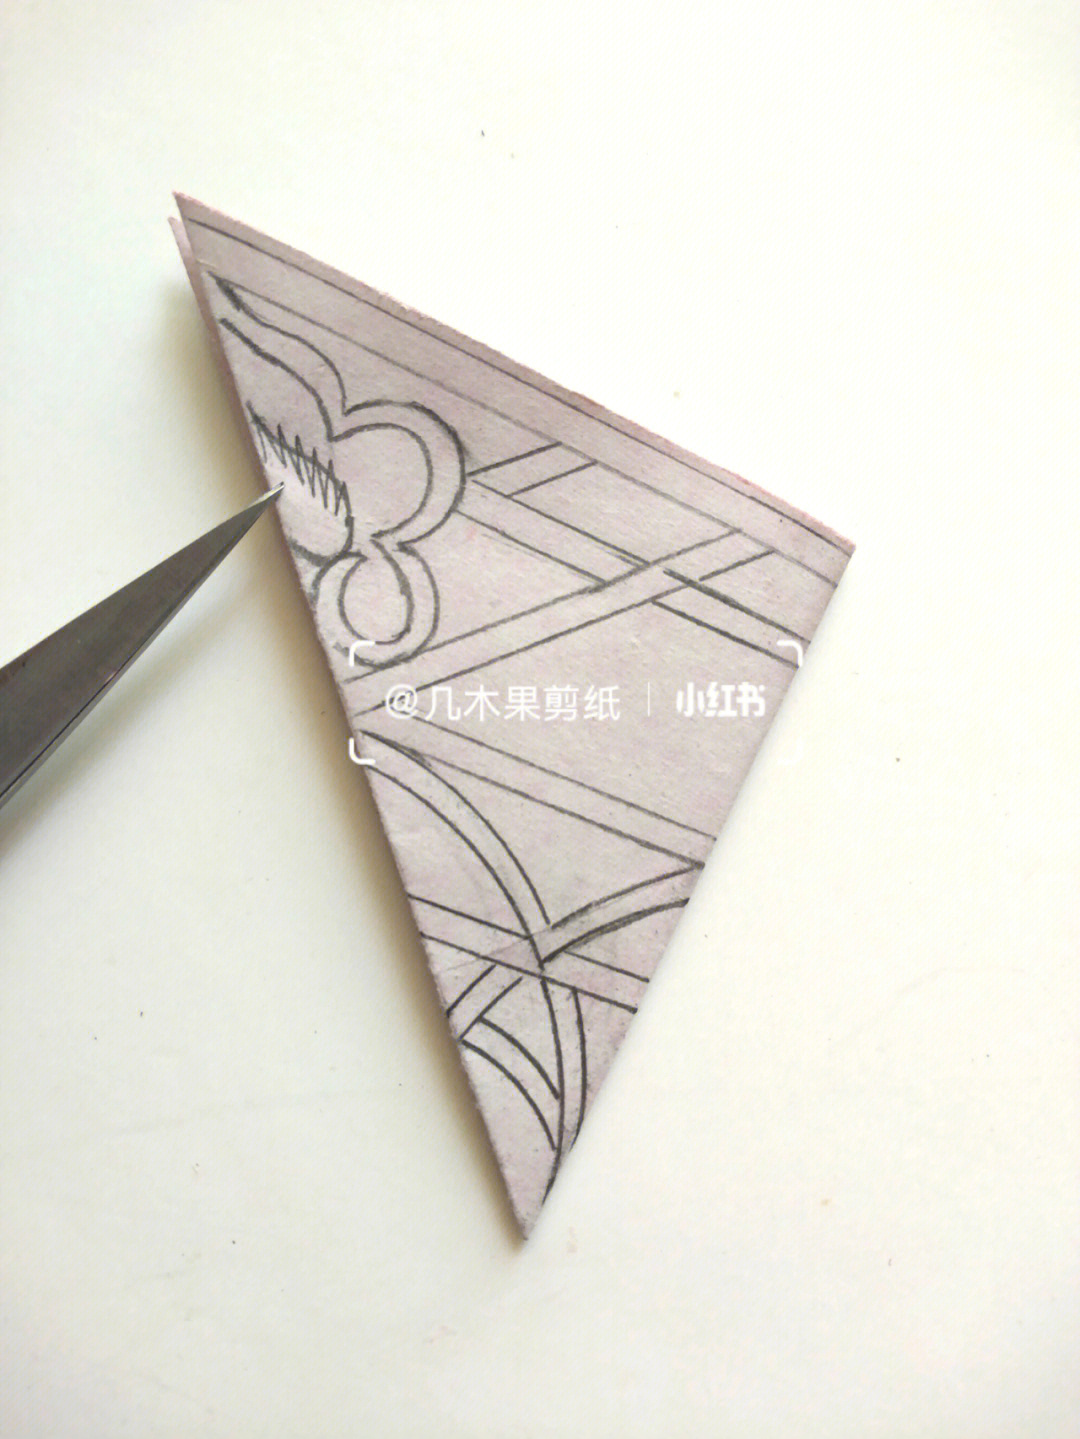 今天和大家分享一个原创的四角折剪纸窗花喜欢的话不妨试试哦